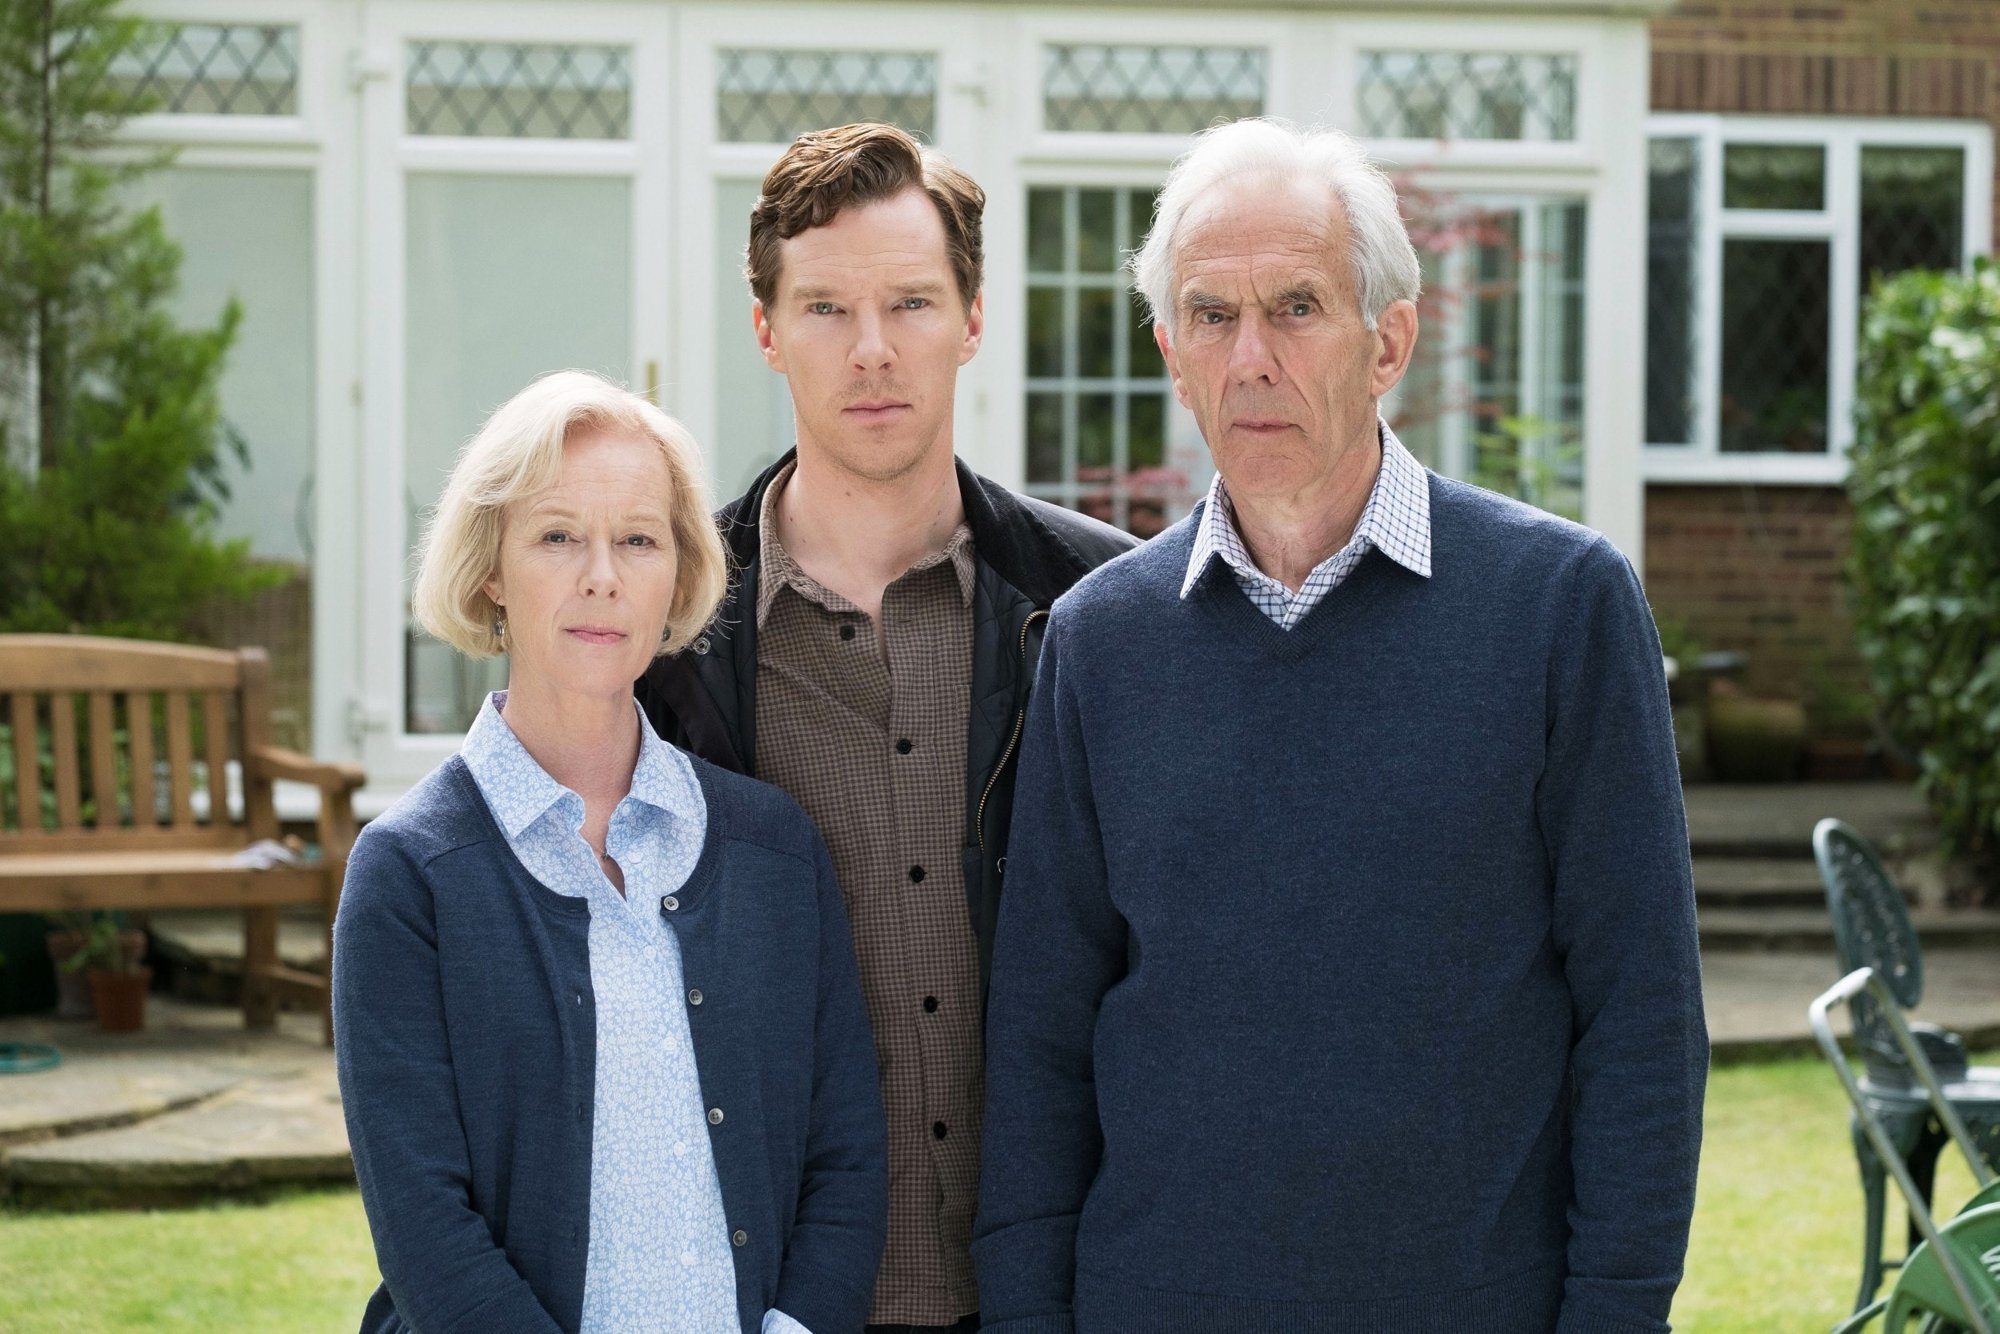 Geraldine Alexander, Benedict Cumberbatch and Richard Durden in PBS' The Child in Time (2018)